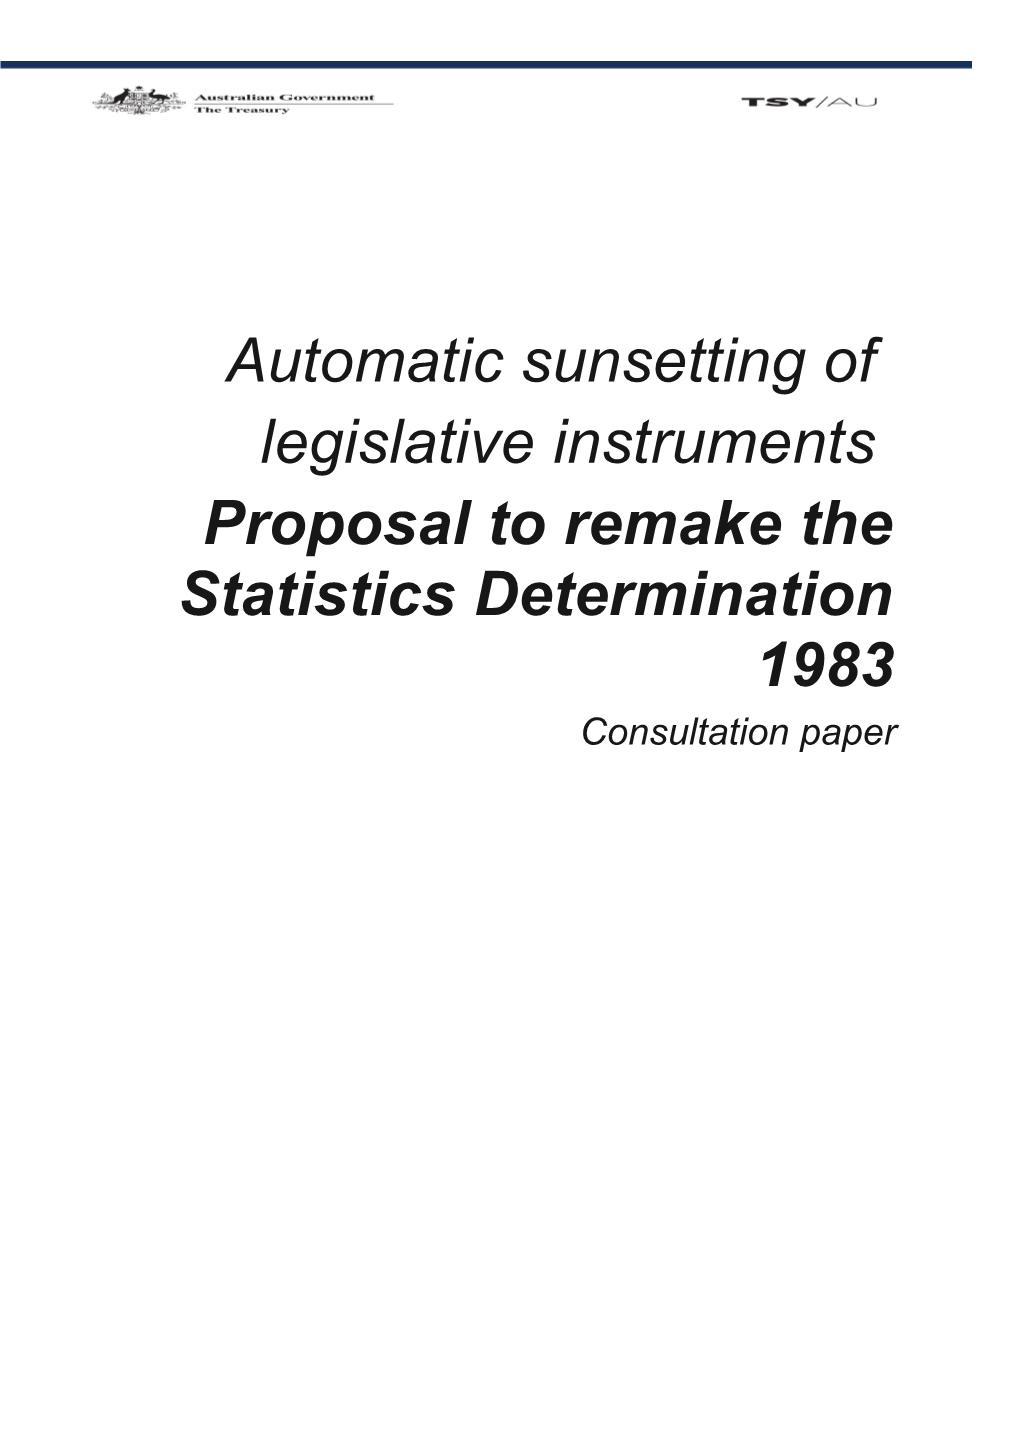 The Statistics Determination 1983 - Consultation Paper